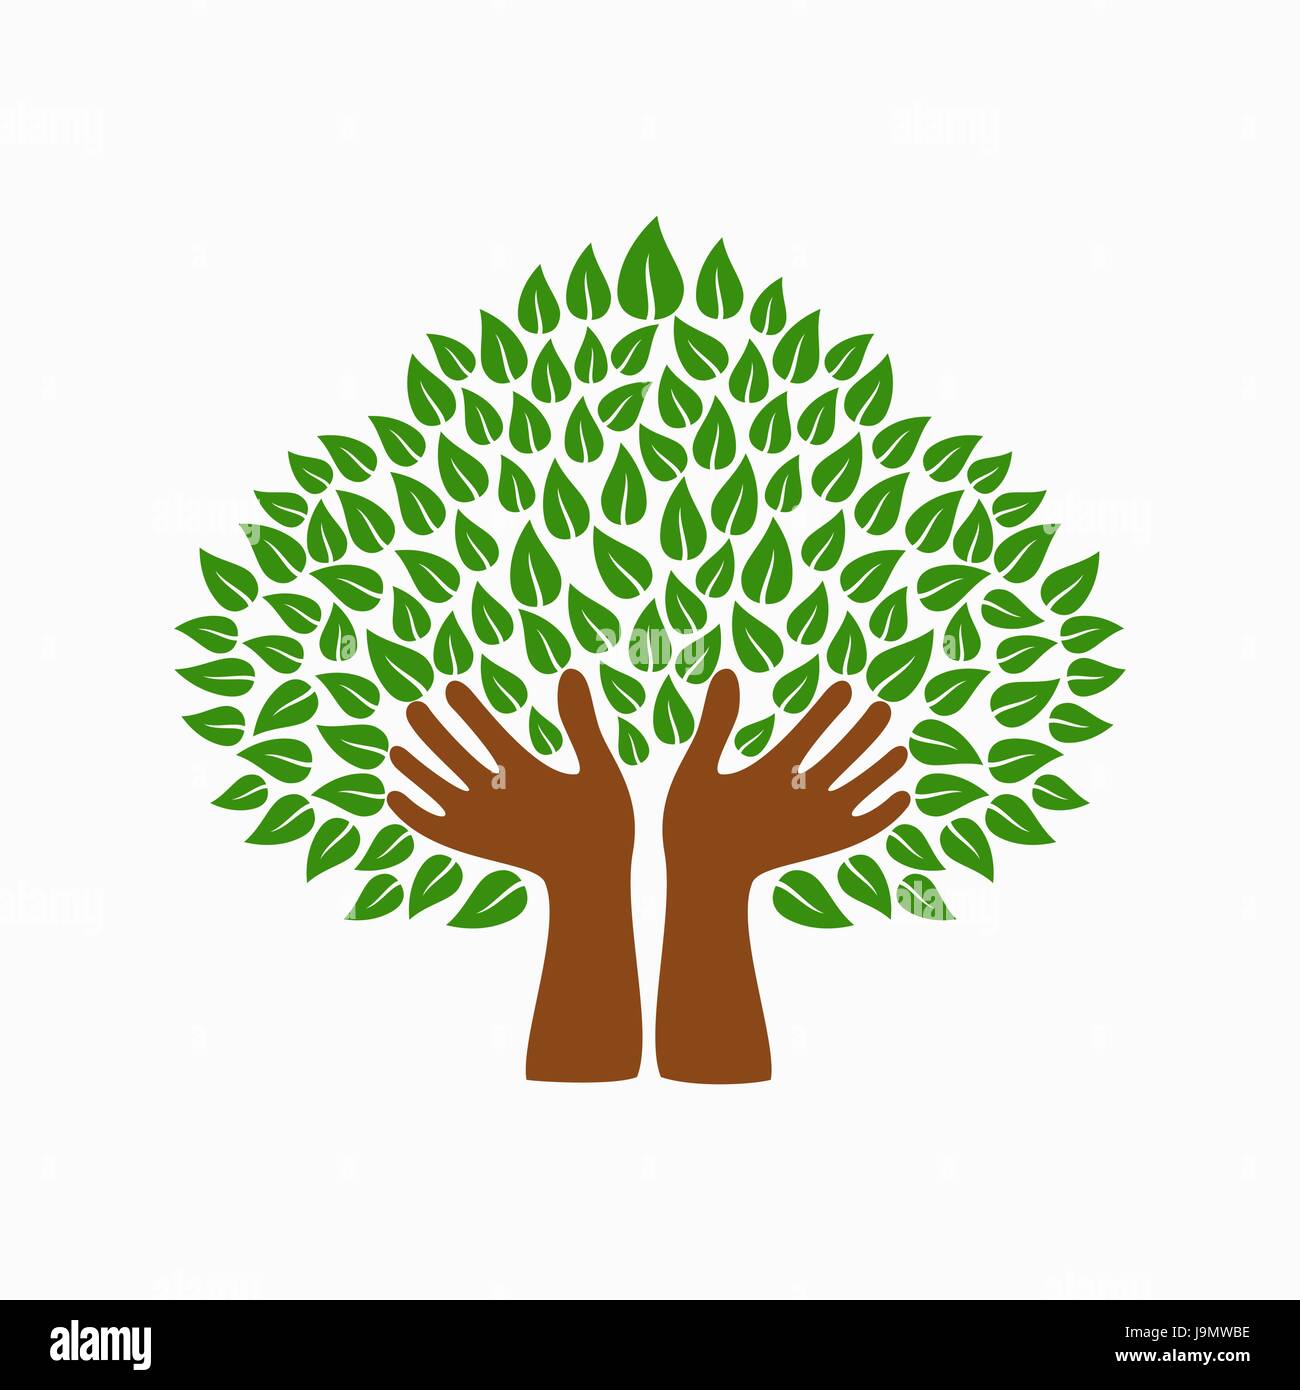 Symbole de l'arbre avec des mains et des feuilles vertes. Concept illustration pour aider à l'organisation du projet, l'environnement ou de travail social. Vecteur EPS10. Illustration de Vecteur